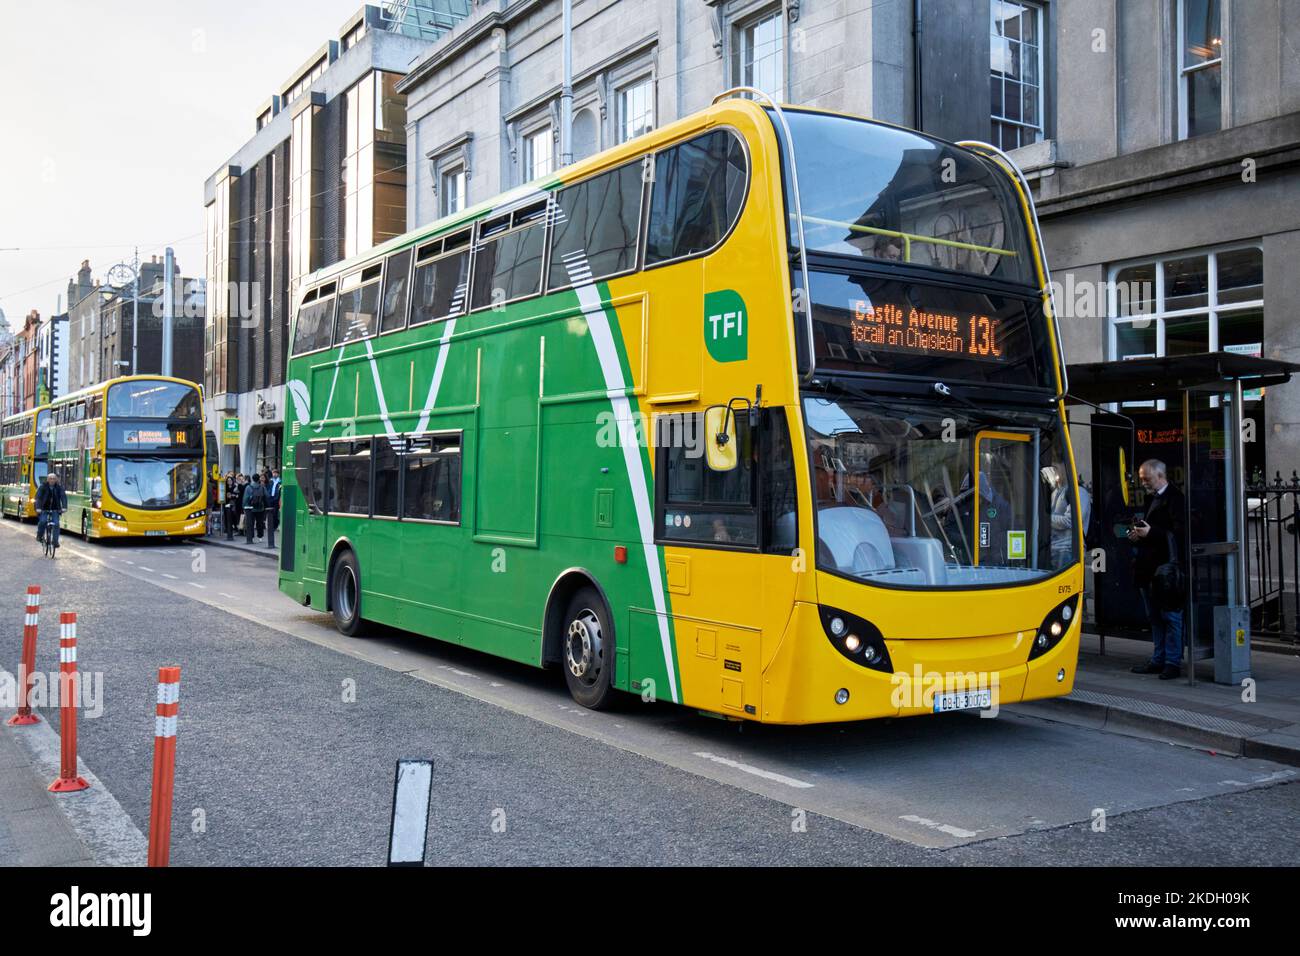 Transport für irland dublin Bus neue grüne und gelbe Lackierung Abtei Straße dublin republik irland Stockfoto